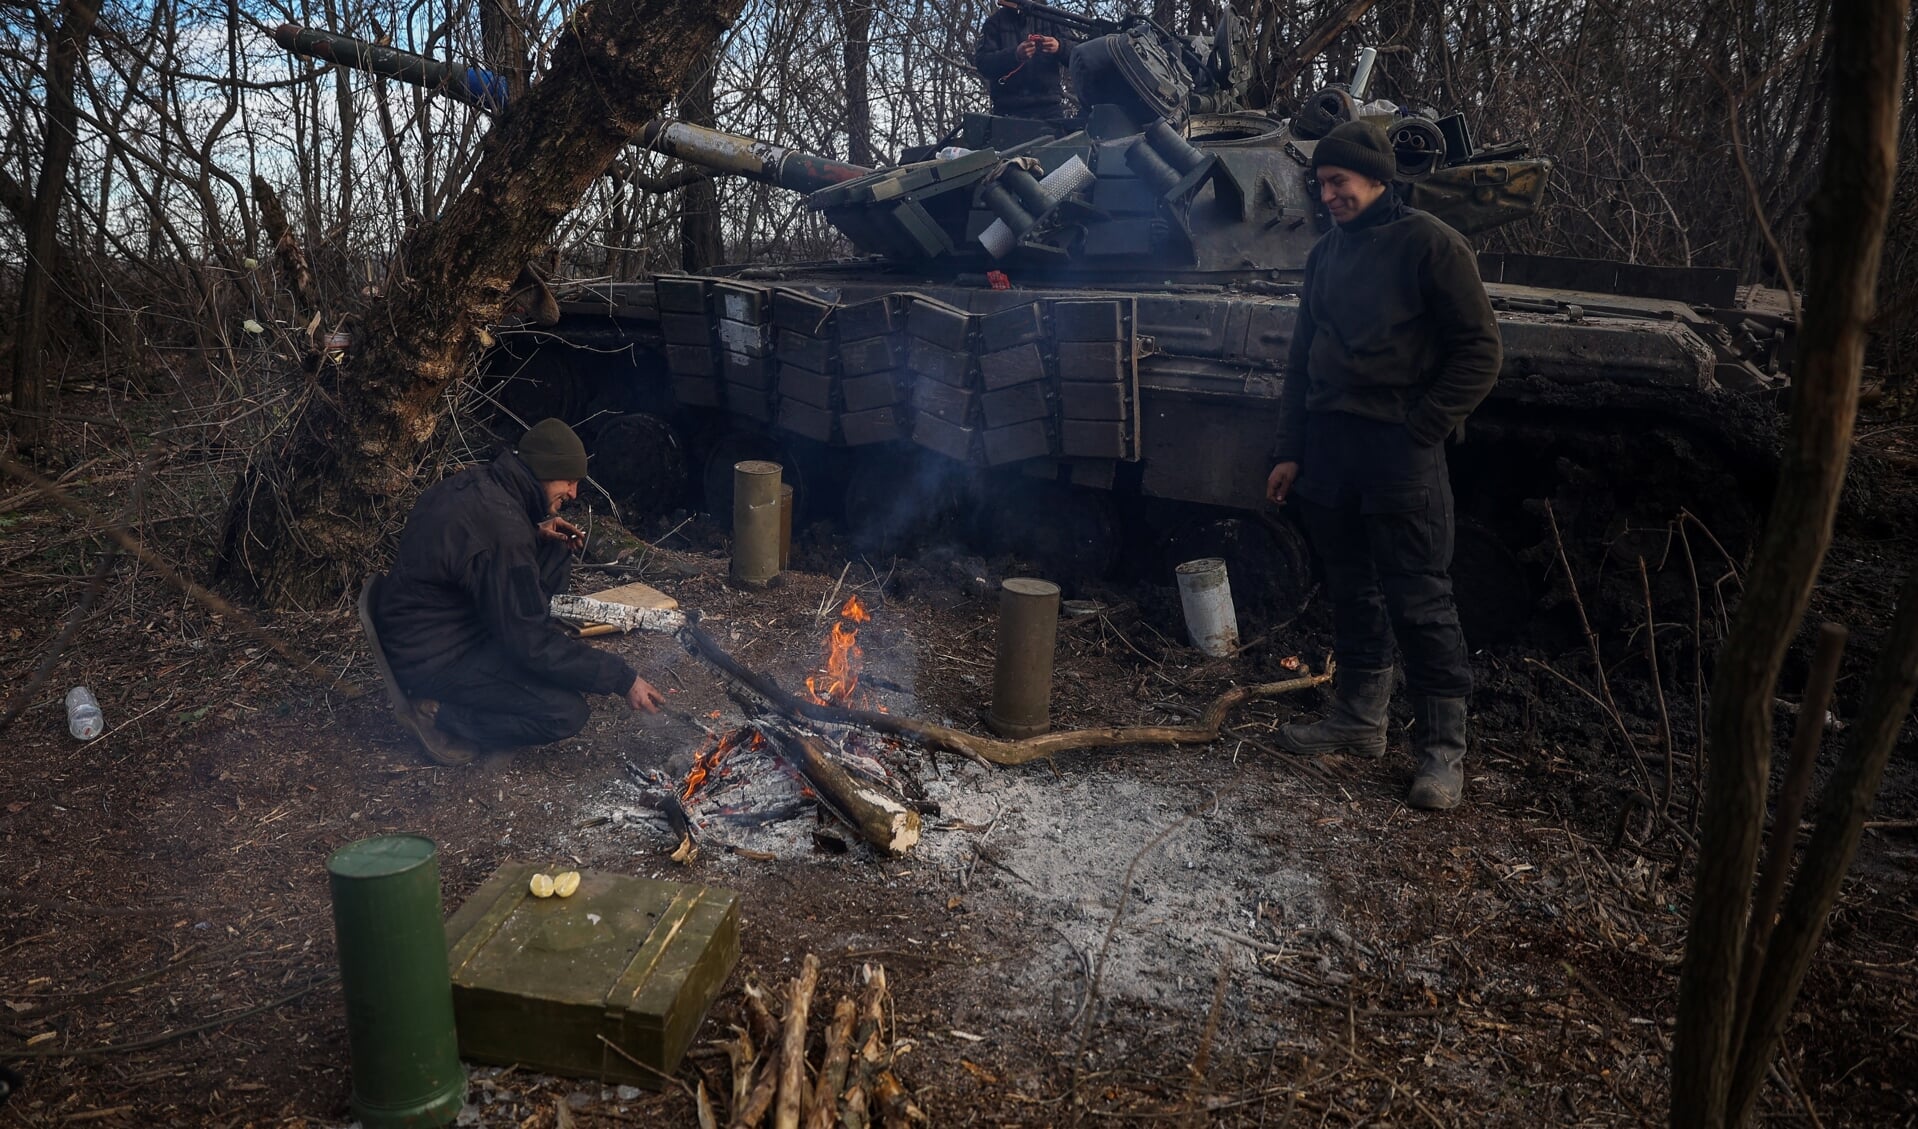 Oekraïners warmen zich aan een vuurtje naast hun tank.